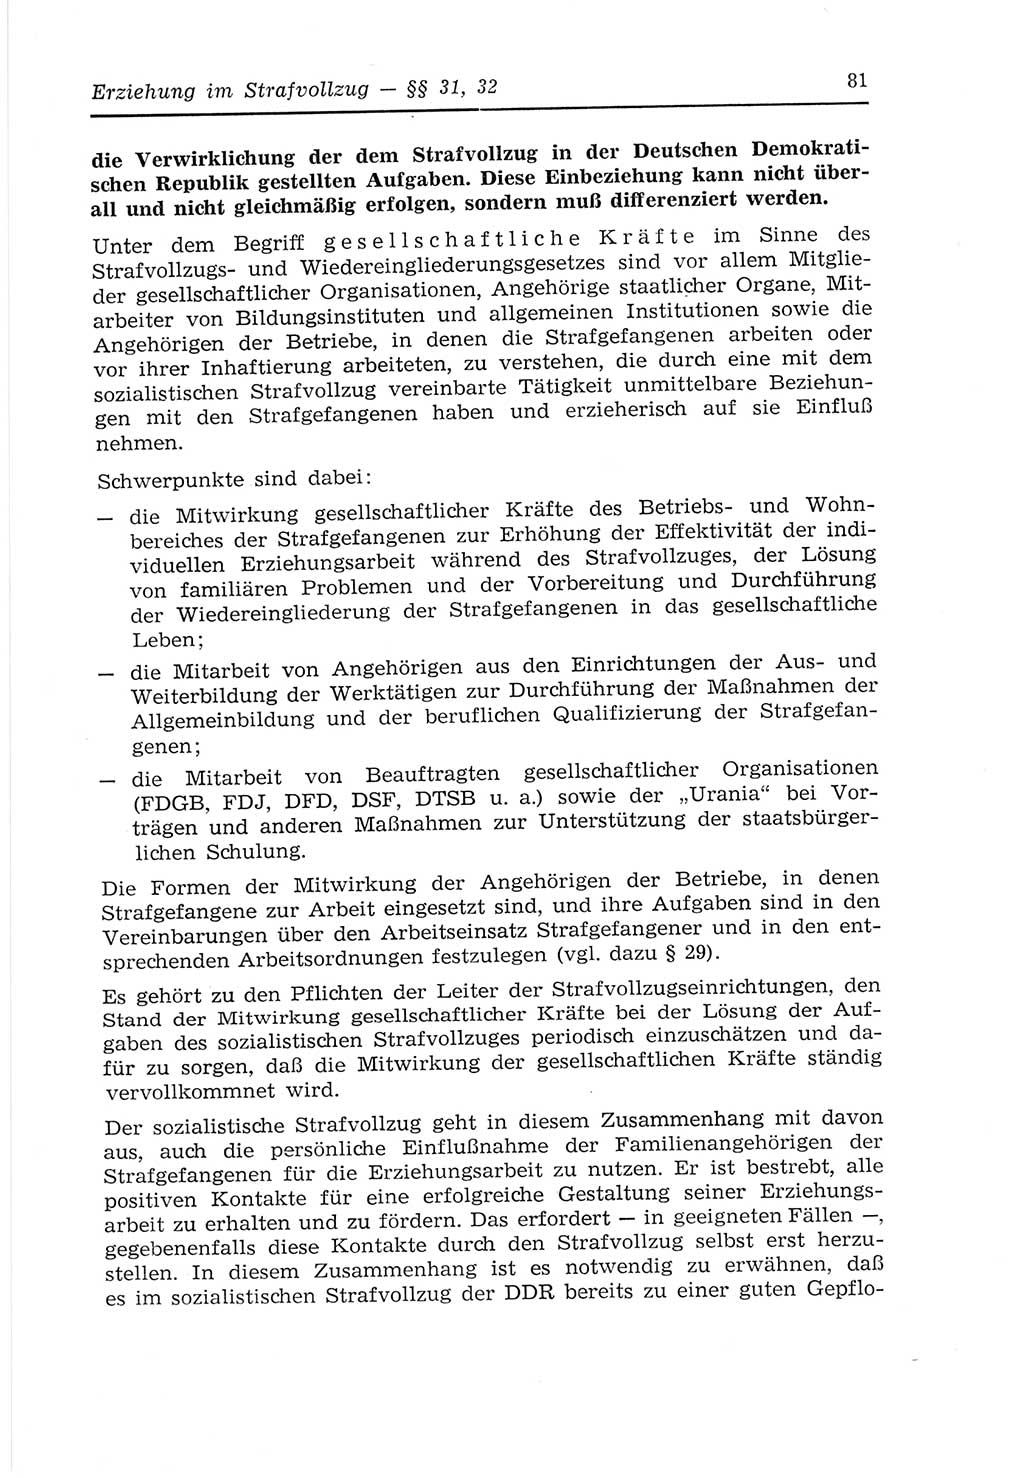 Strafvollzugs- und Wiedereingliederungsgesetz (SVWG) der Deutschen Demokratischen Republik (DDR) 1968, Seite 81 (SVWG DDR 1968, S. 81)